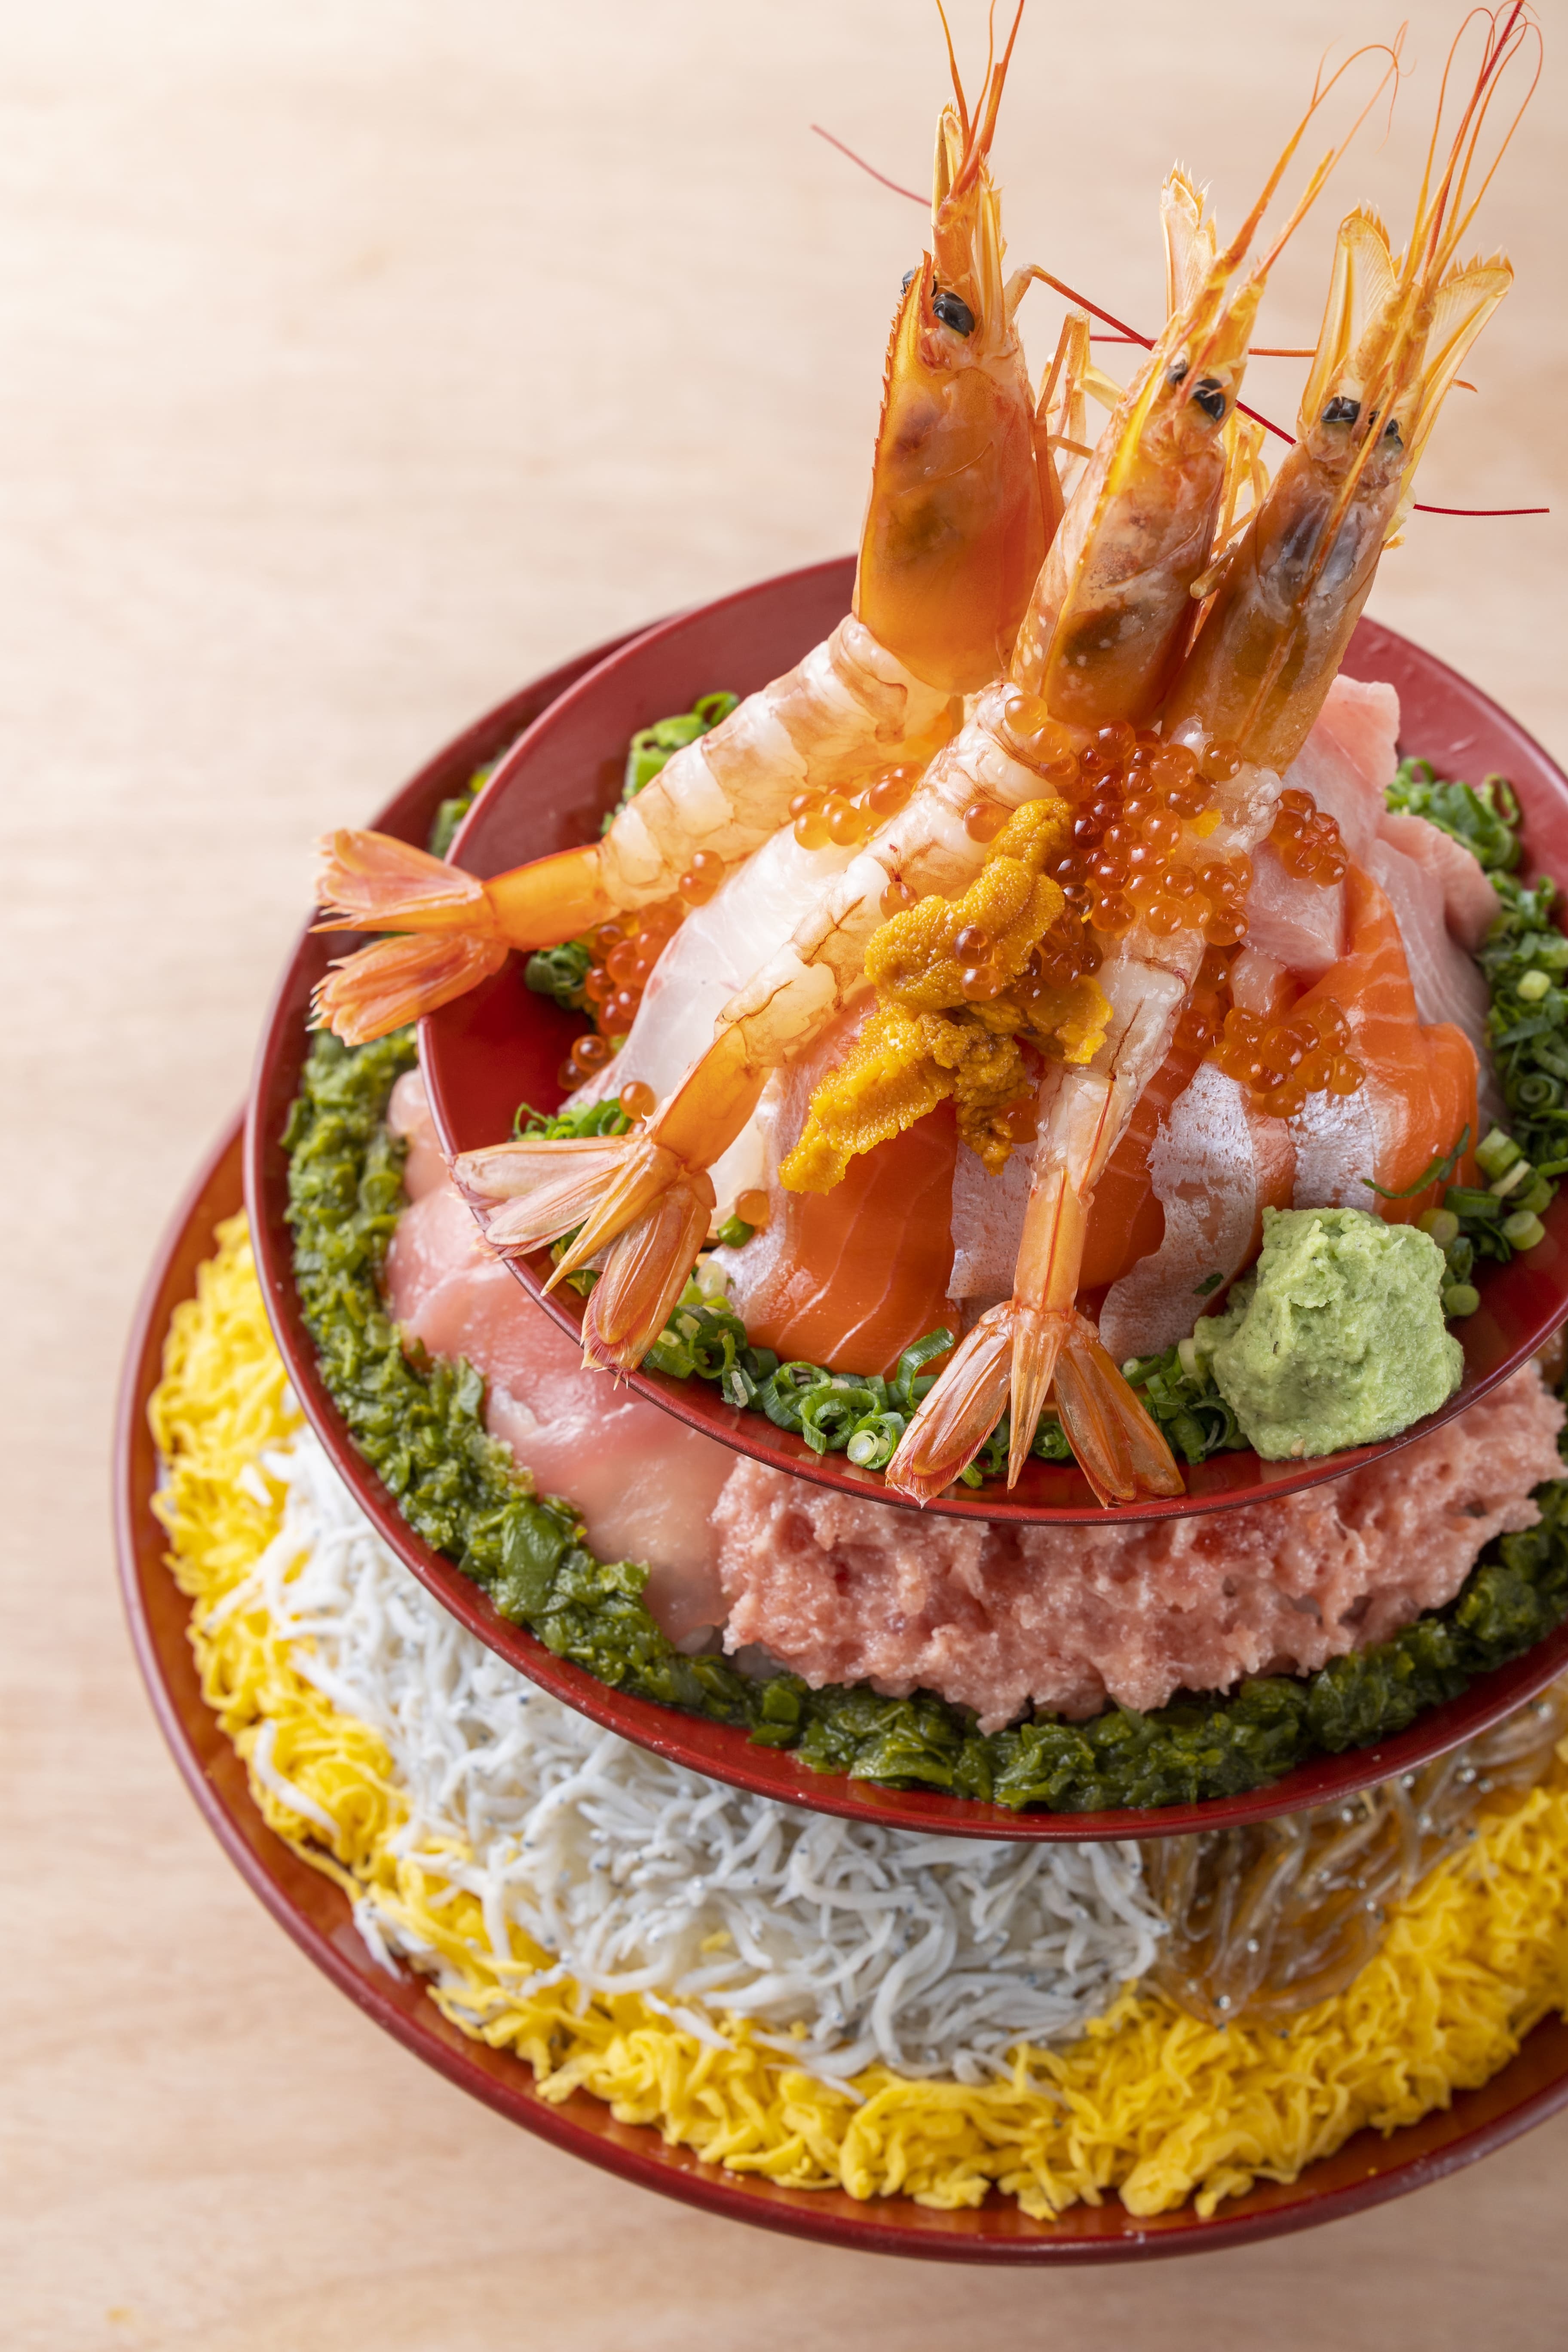 総重量2kg！12種の魚介がのった迫力満点の海鮮丼タワーが
THE OUTLETS SHONAN HIRATSUKA内
「小田原海鮮とと丸食堂」にて7月7日より新発売！